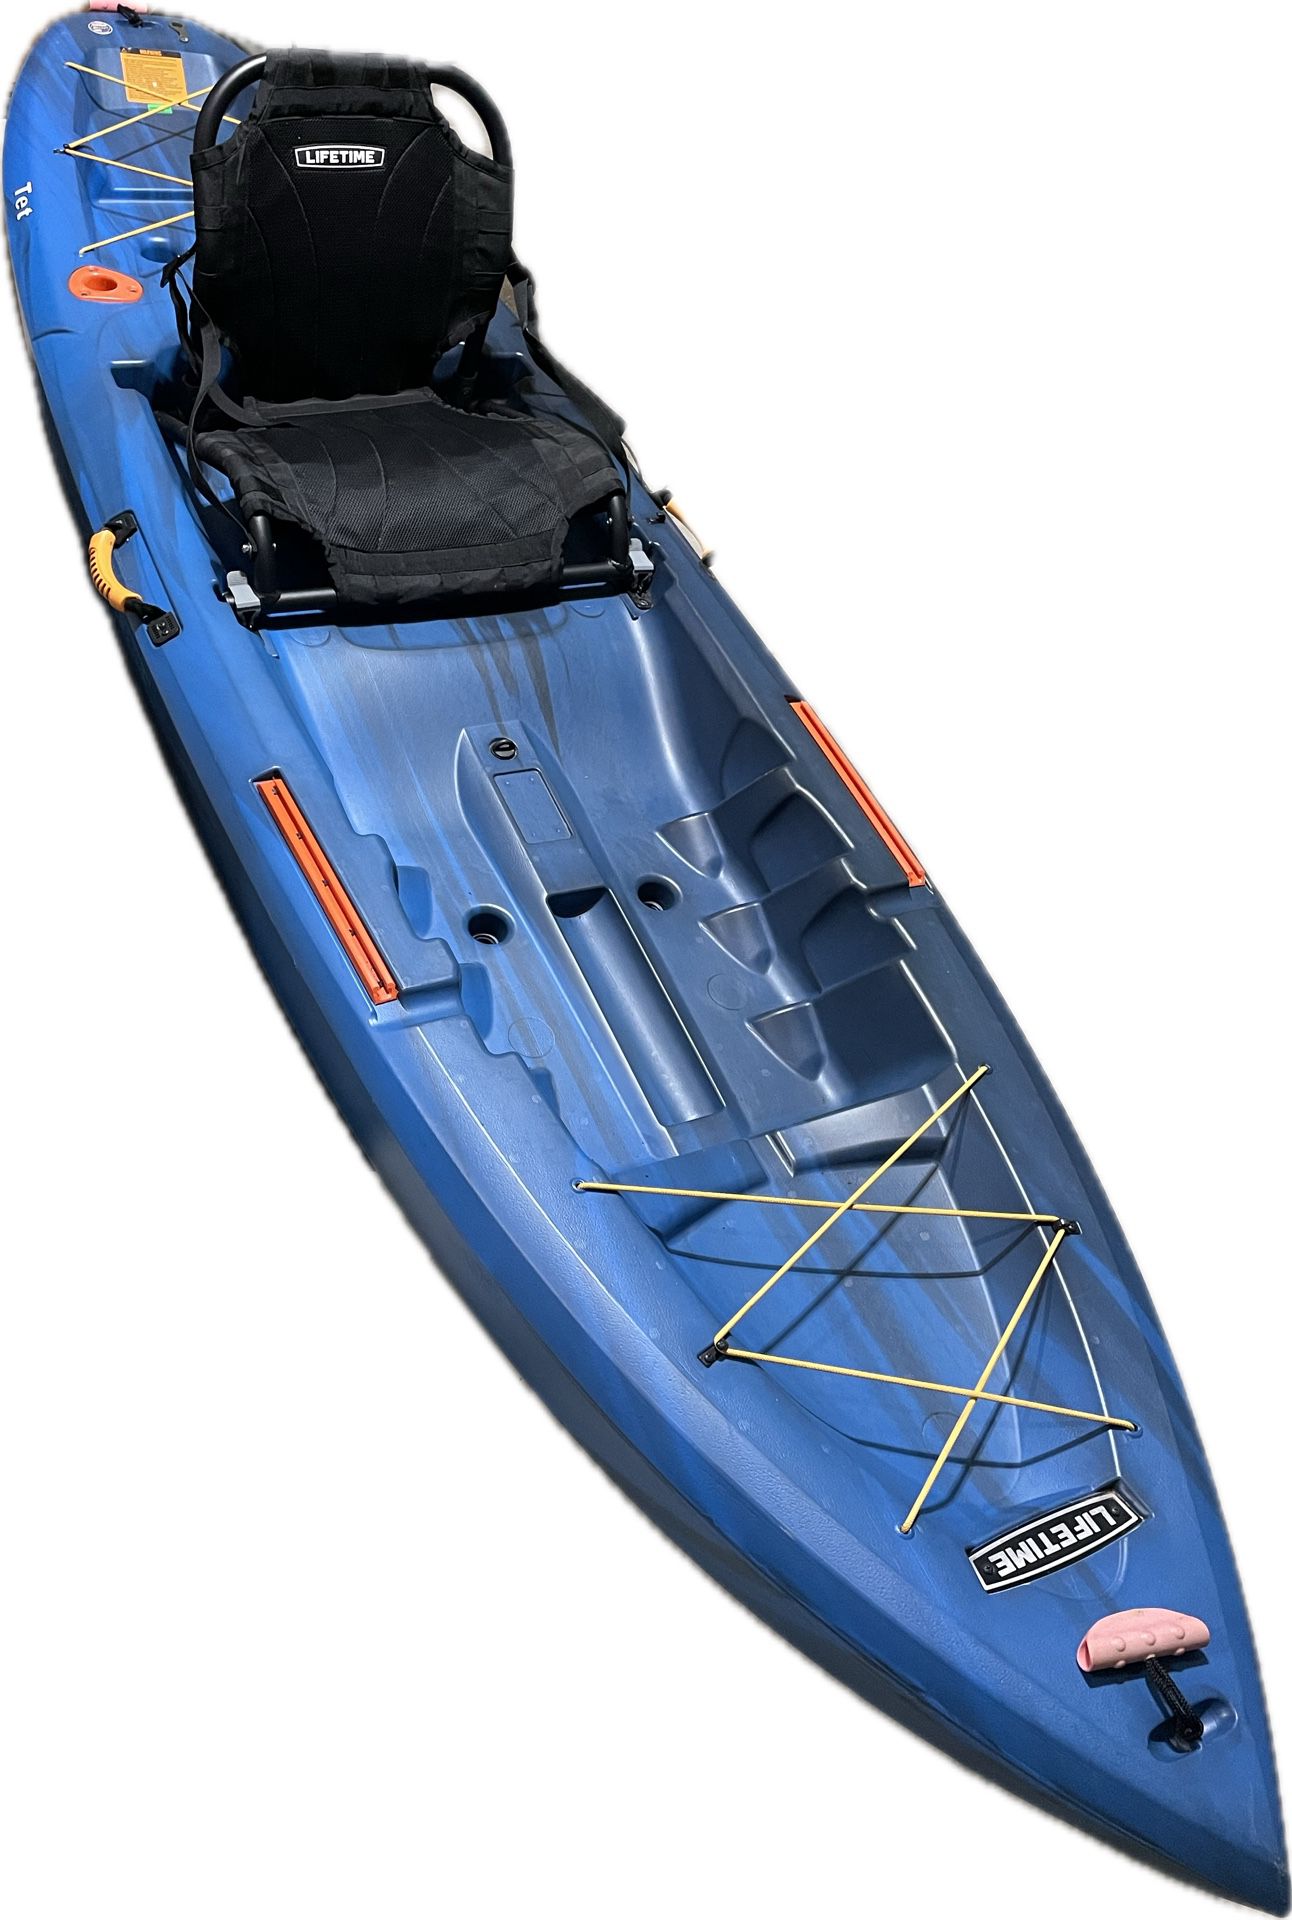 Kayak Fishing/Recreational